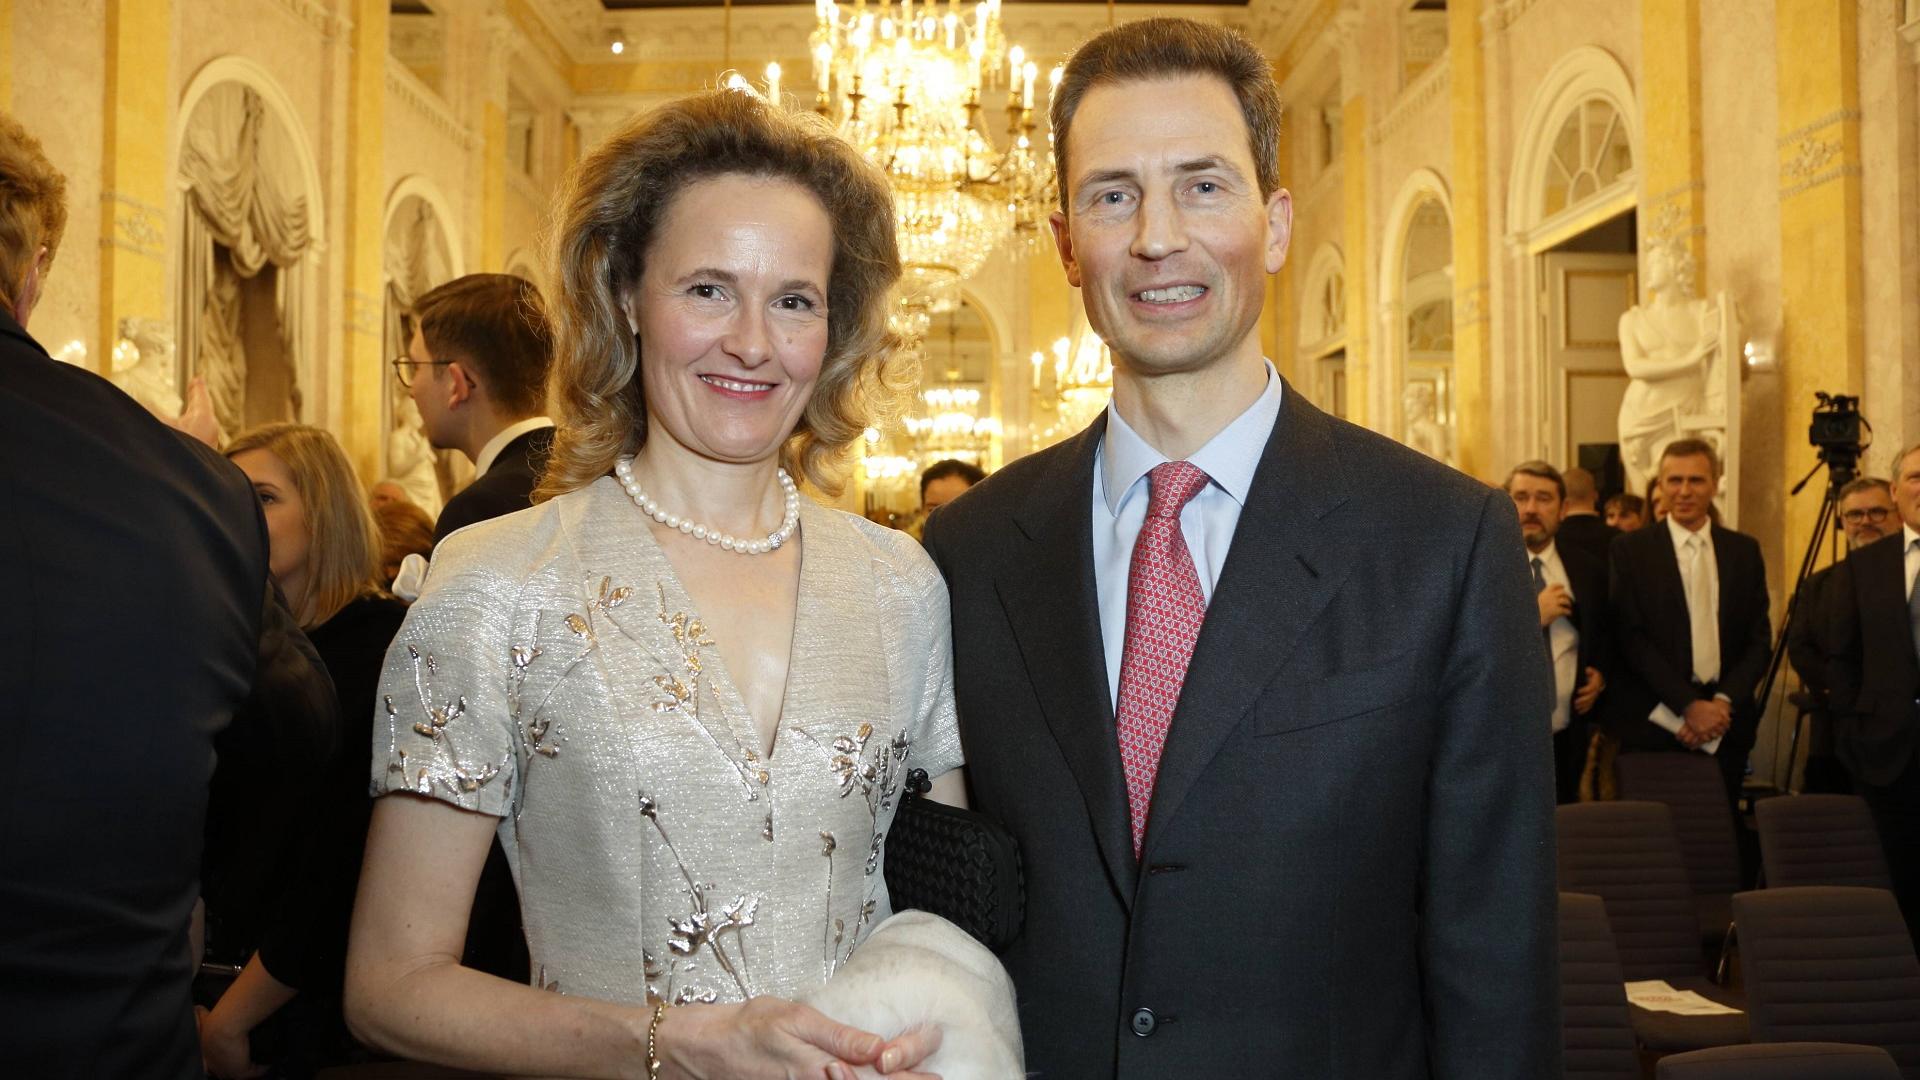 Fürst Alois von Liechtenstein und seine Frau auf einer Eröffnung